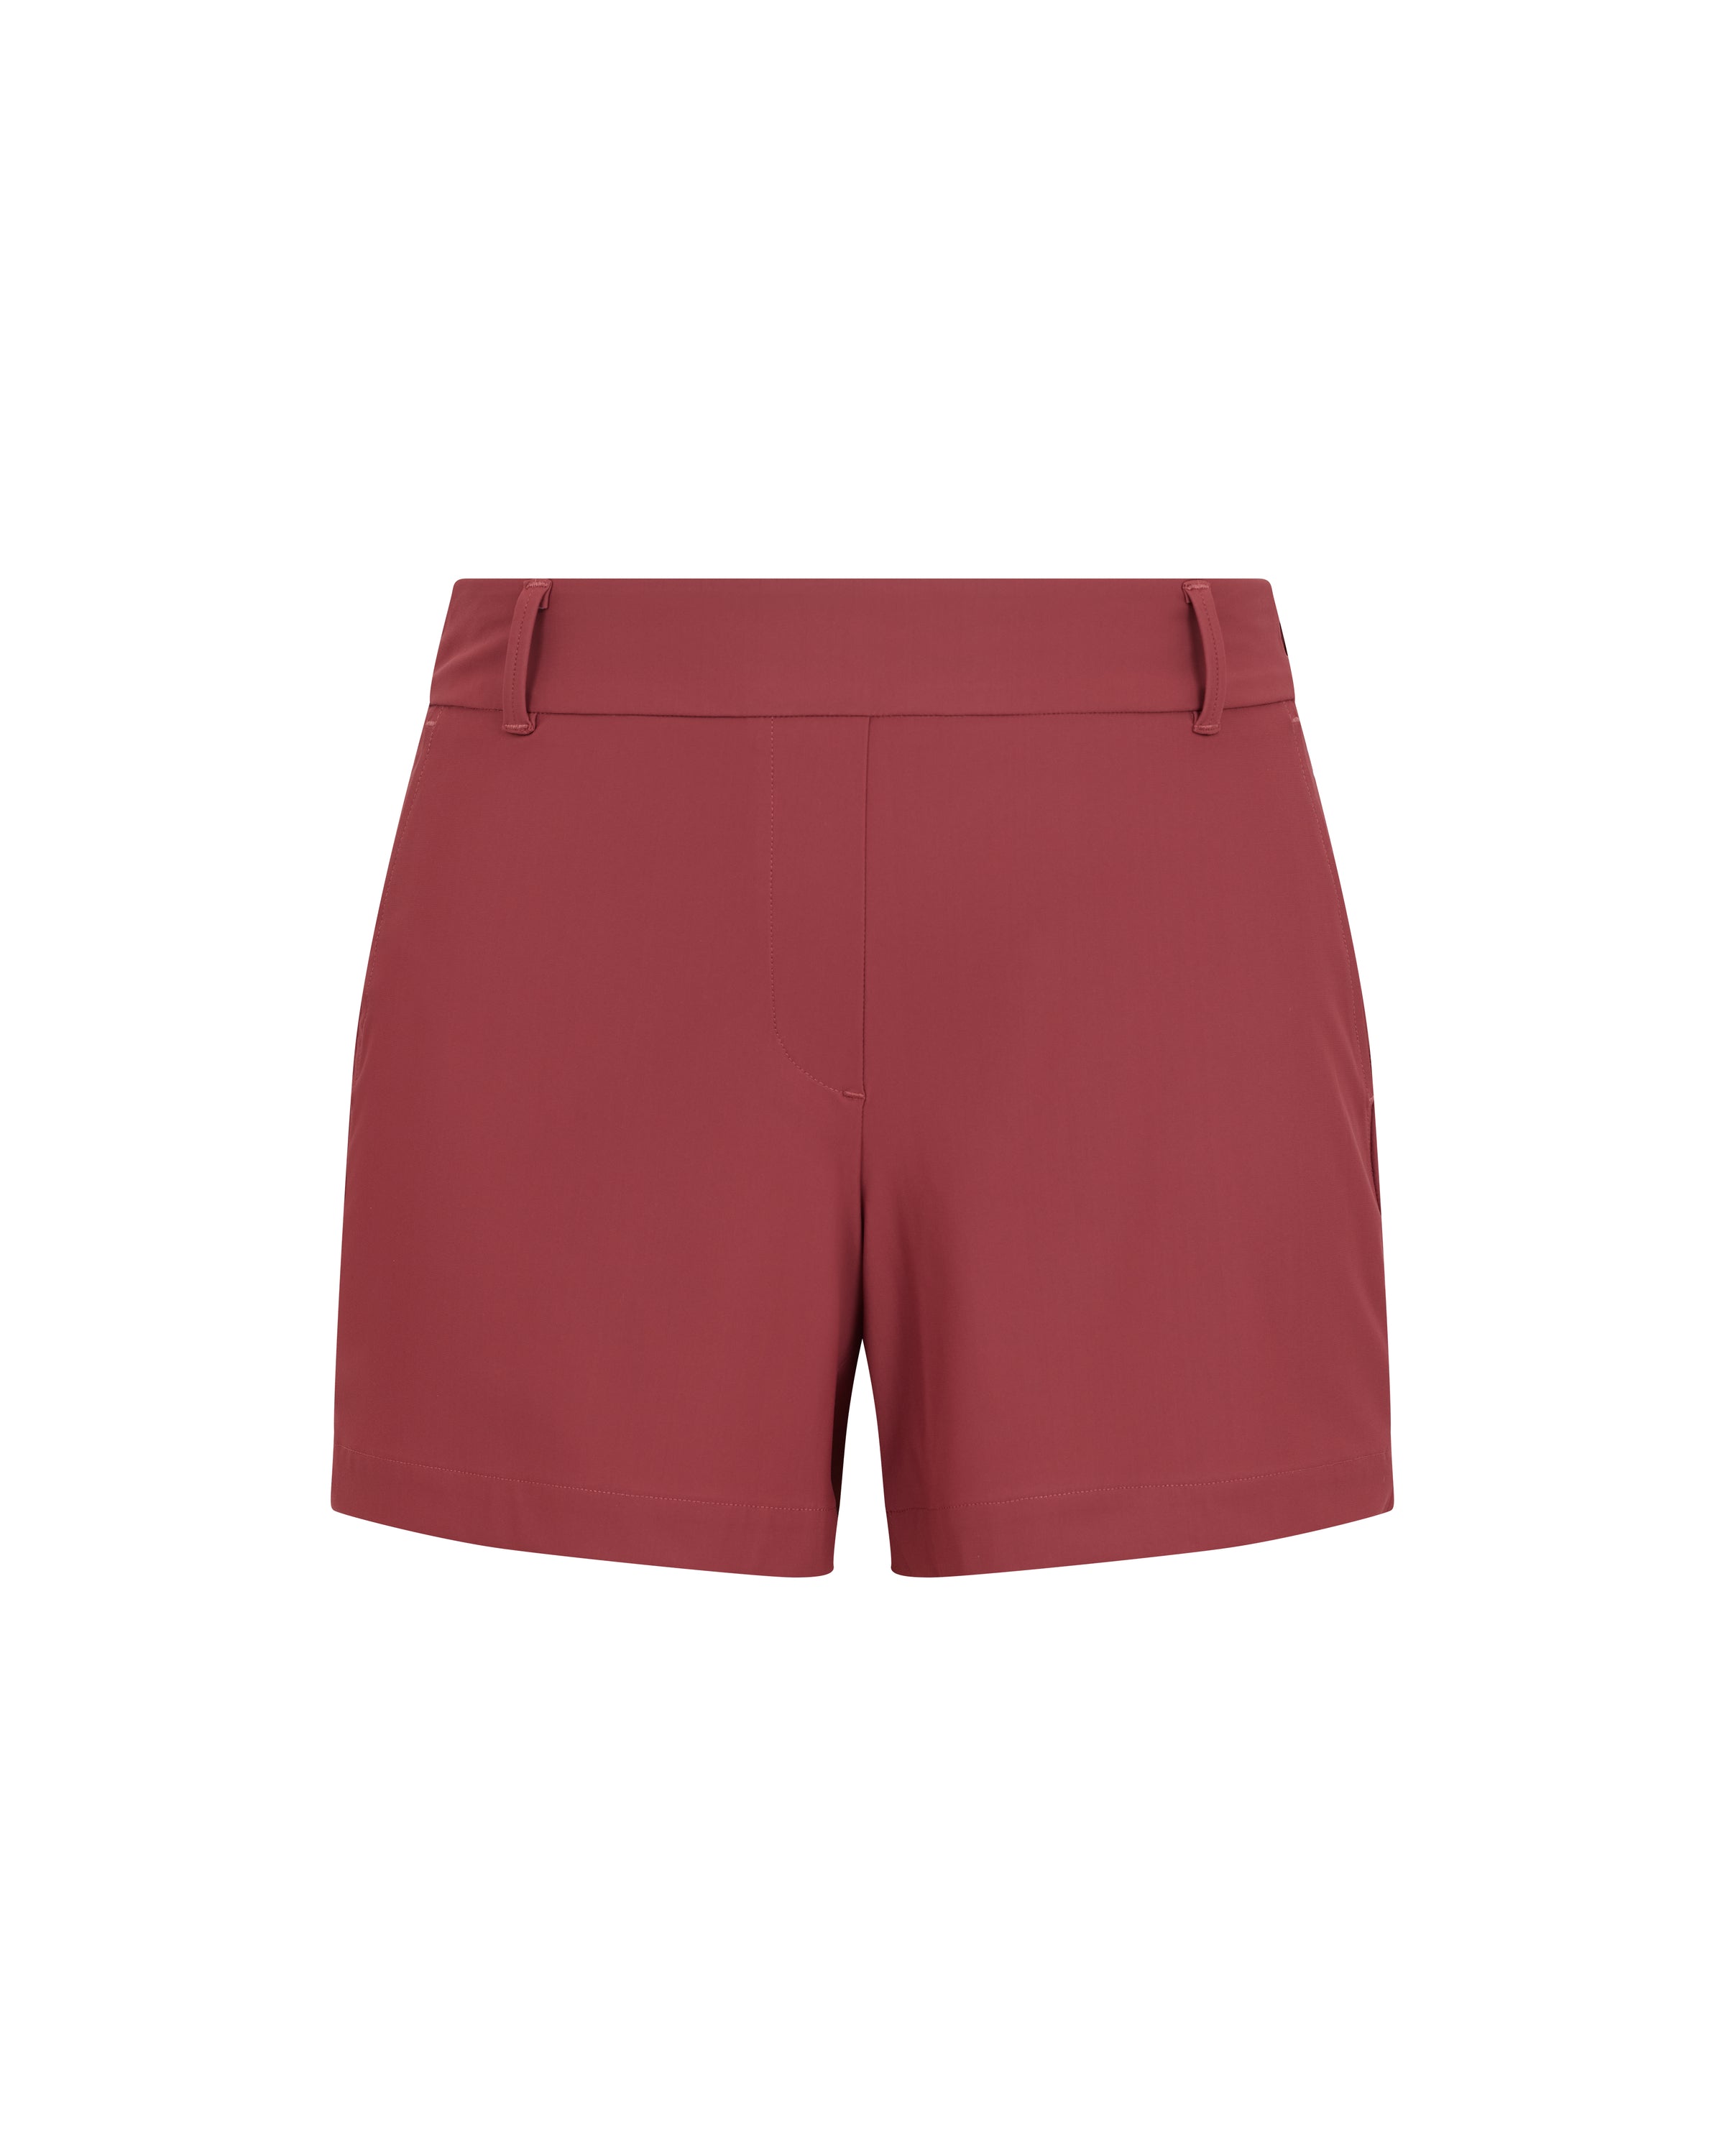 Spanx sunshine shorts womens - Gem